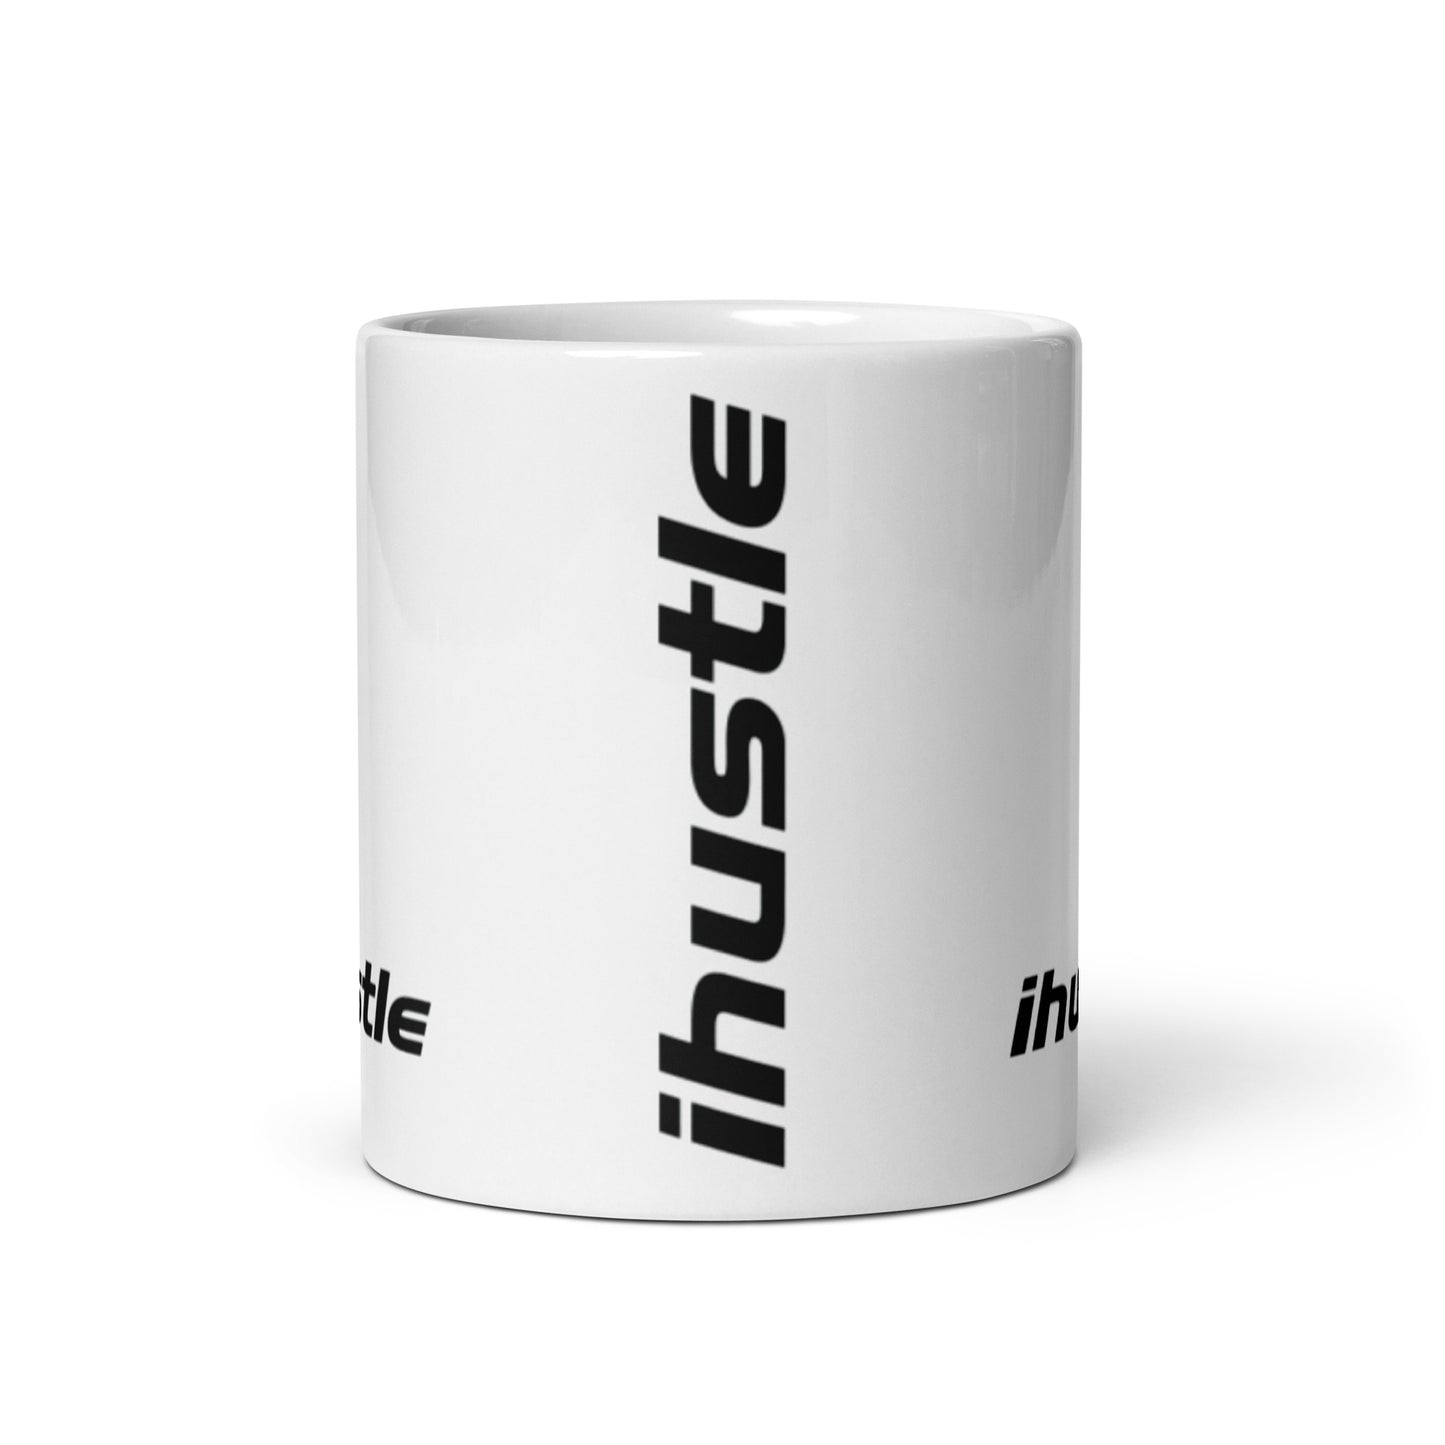 IHUSTLE - White glossy mug